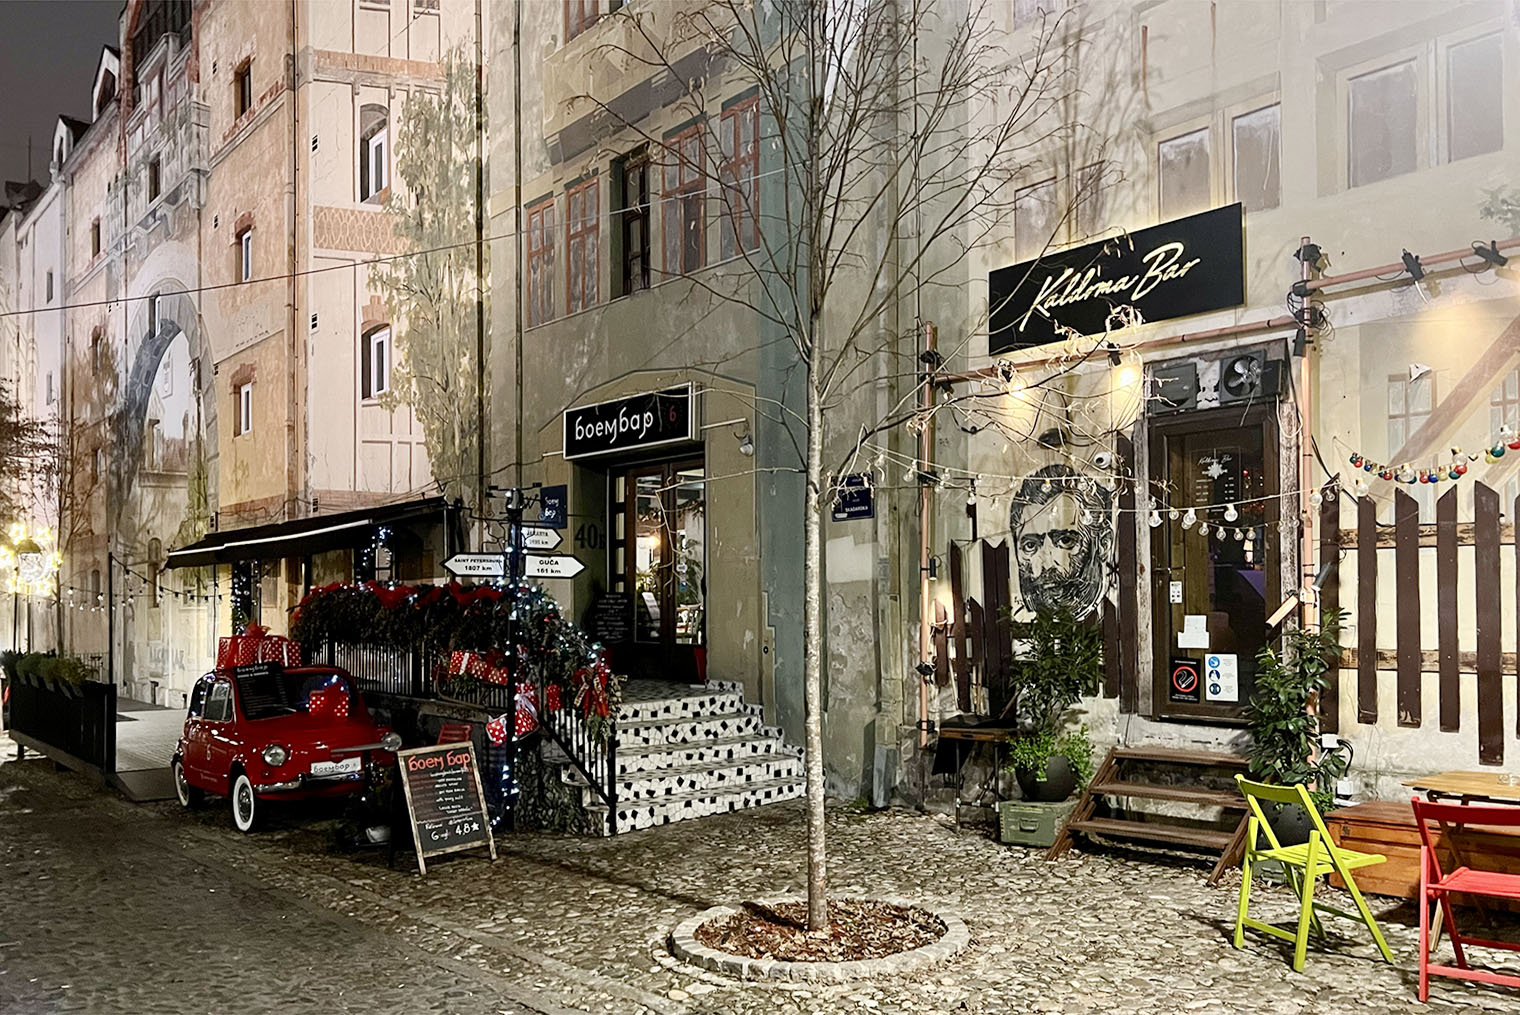 На летних фото из Белграда я видела, что рестораны украшают клумбами с живыми цветами, зимой там не так красочно